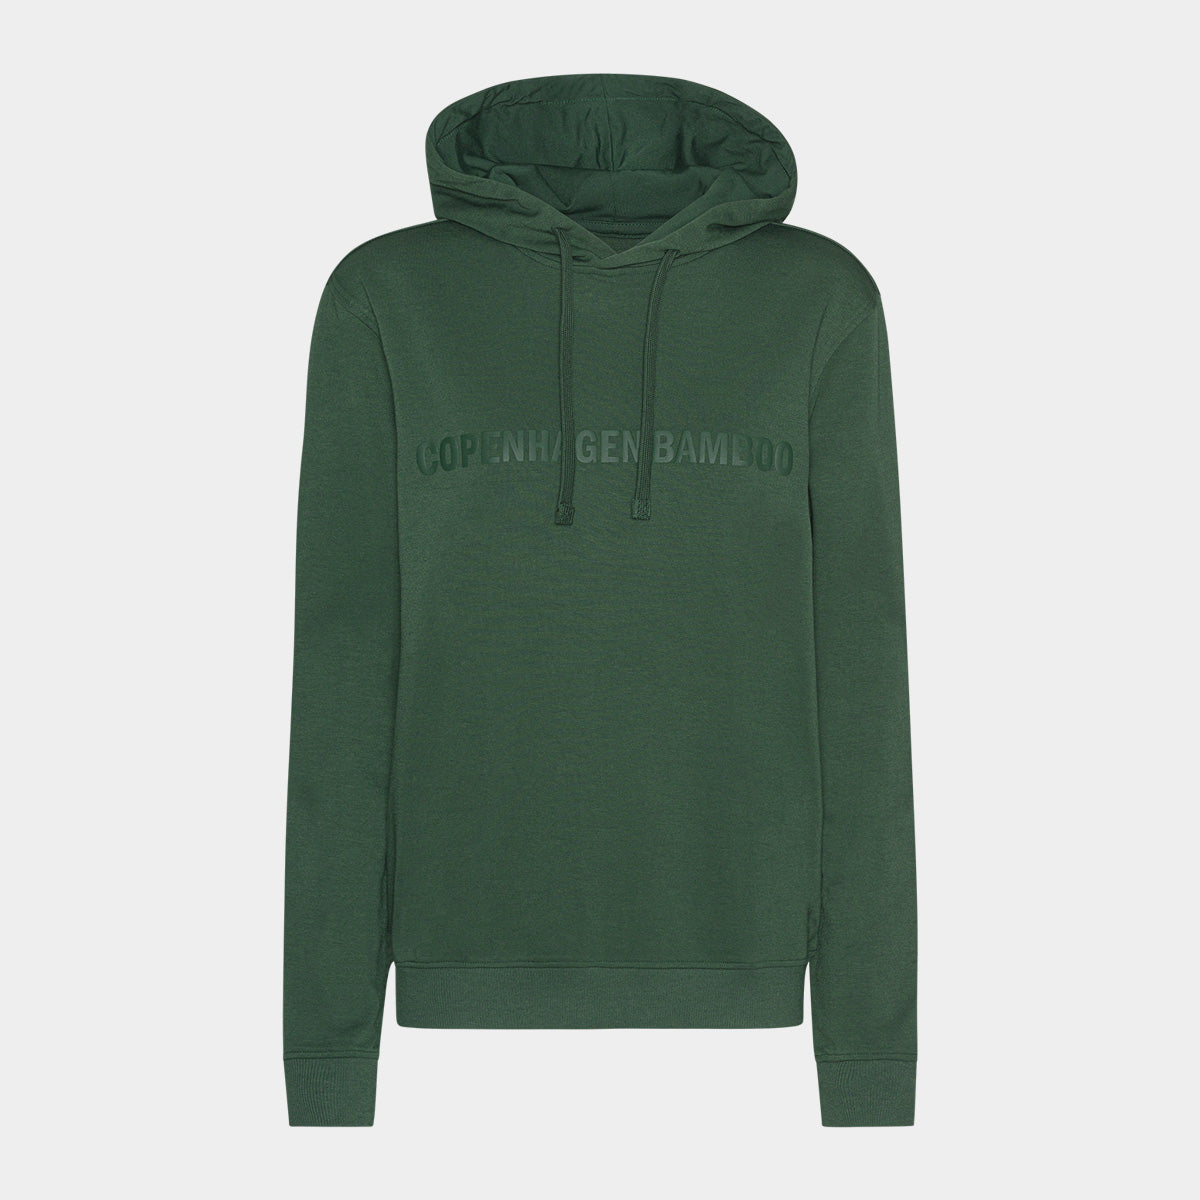 Se Grøn bambus hoodie til mænd med logo fra Copenhagen Bamboo, S hos Bambustøj.dk